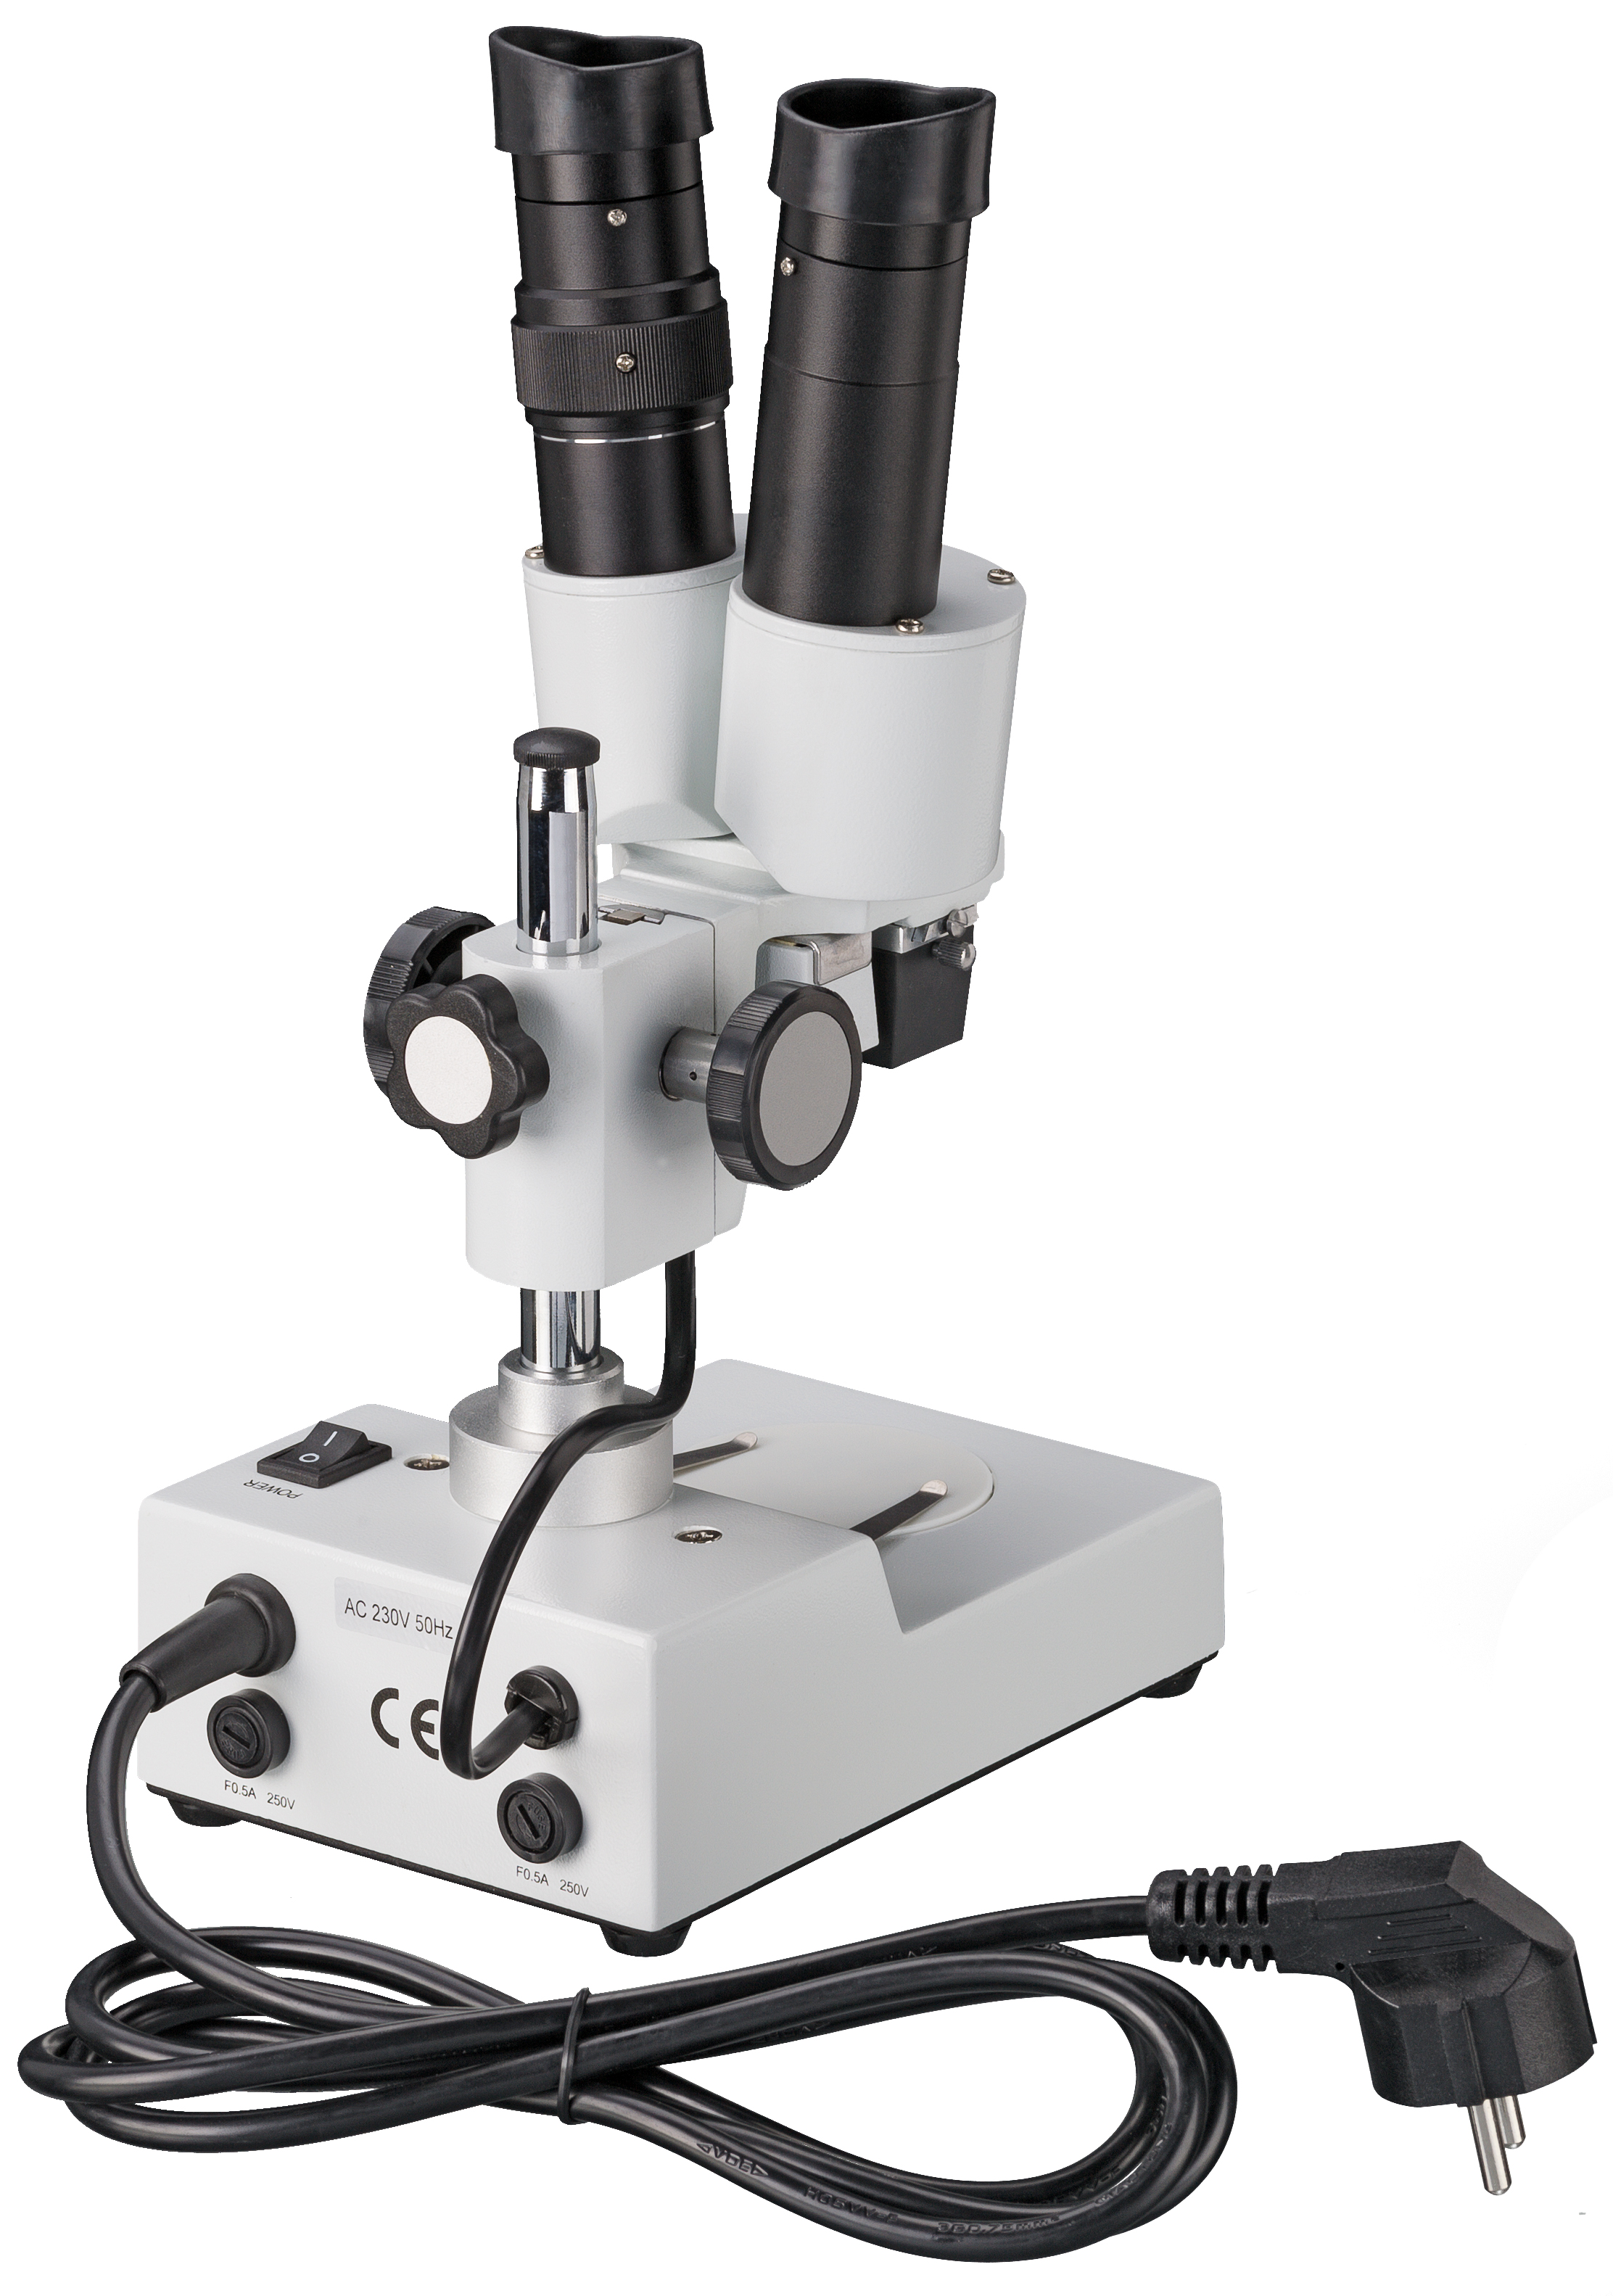 BRESSER Biorit ICD 20x Auflichtmikroskop